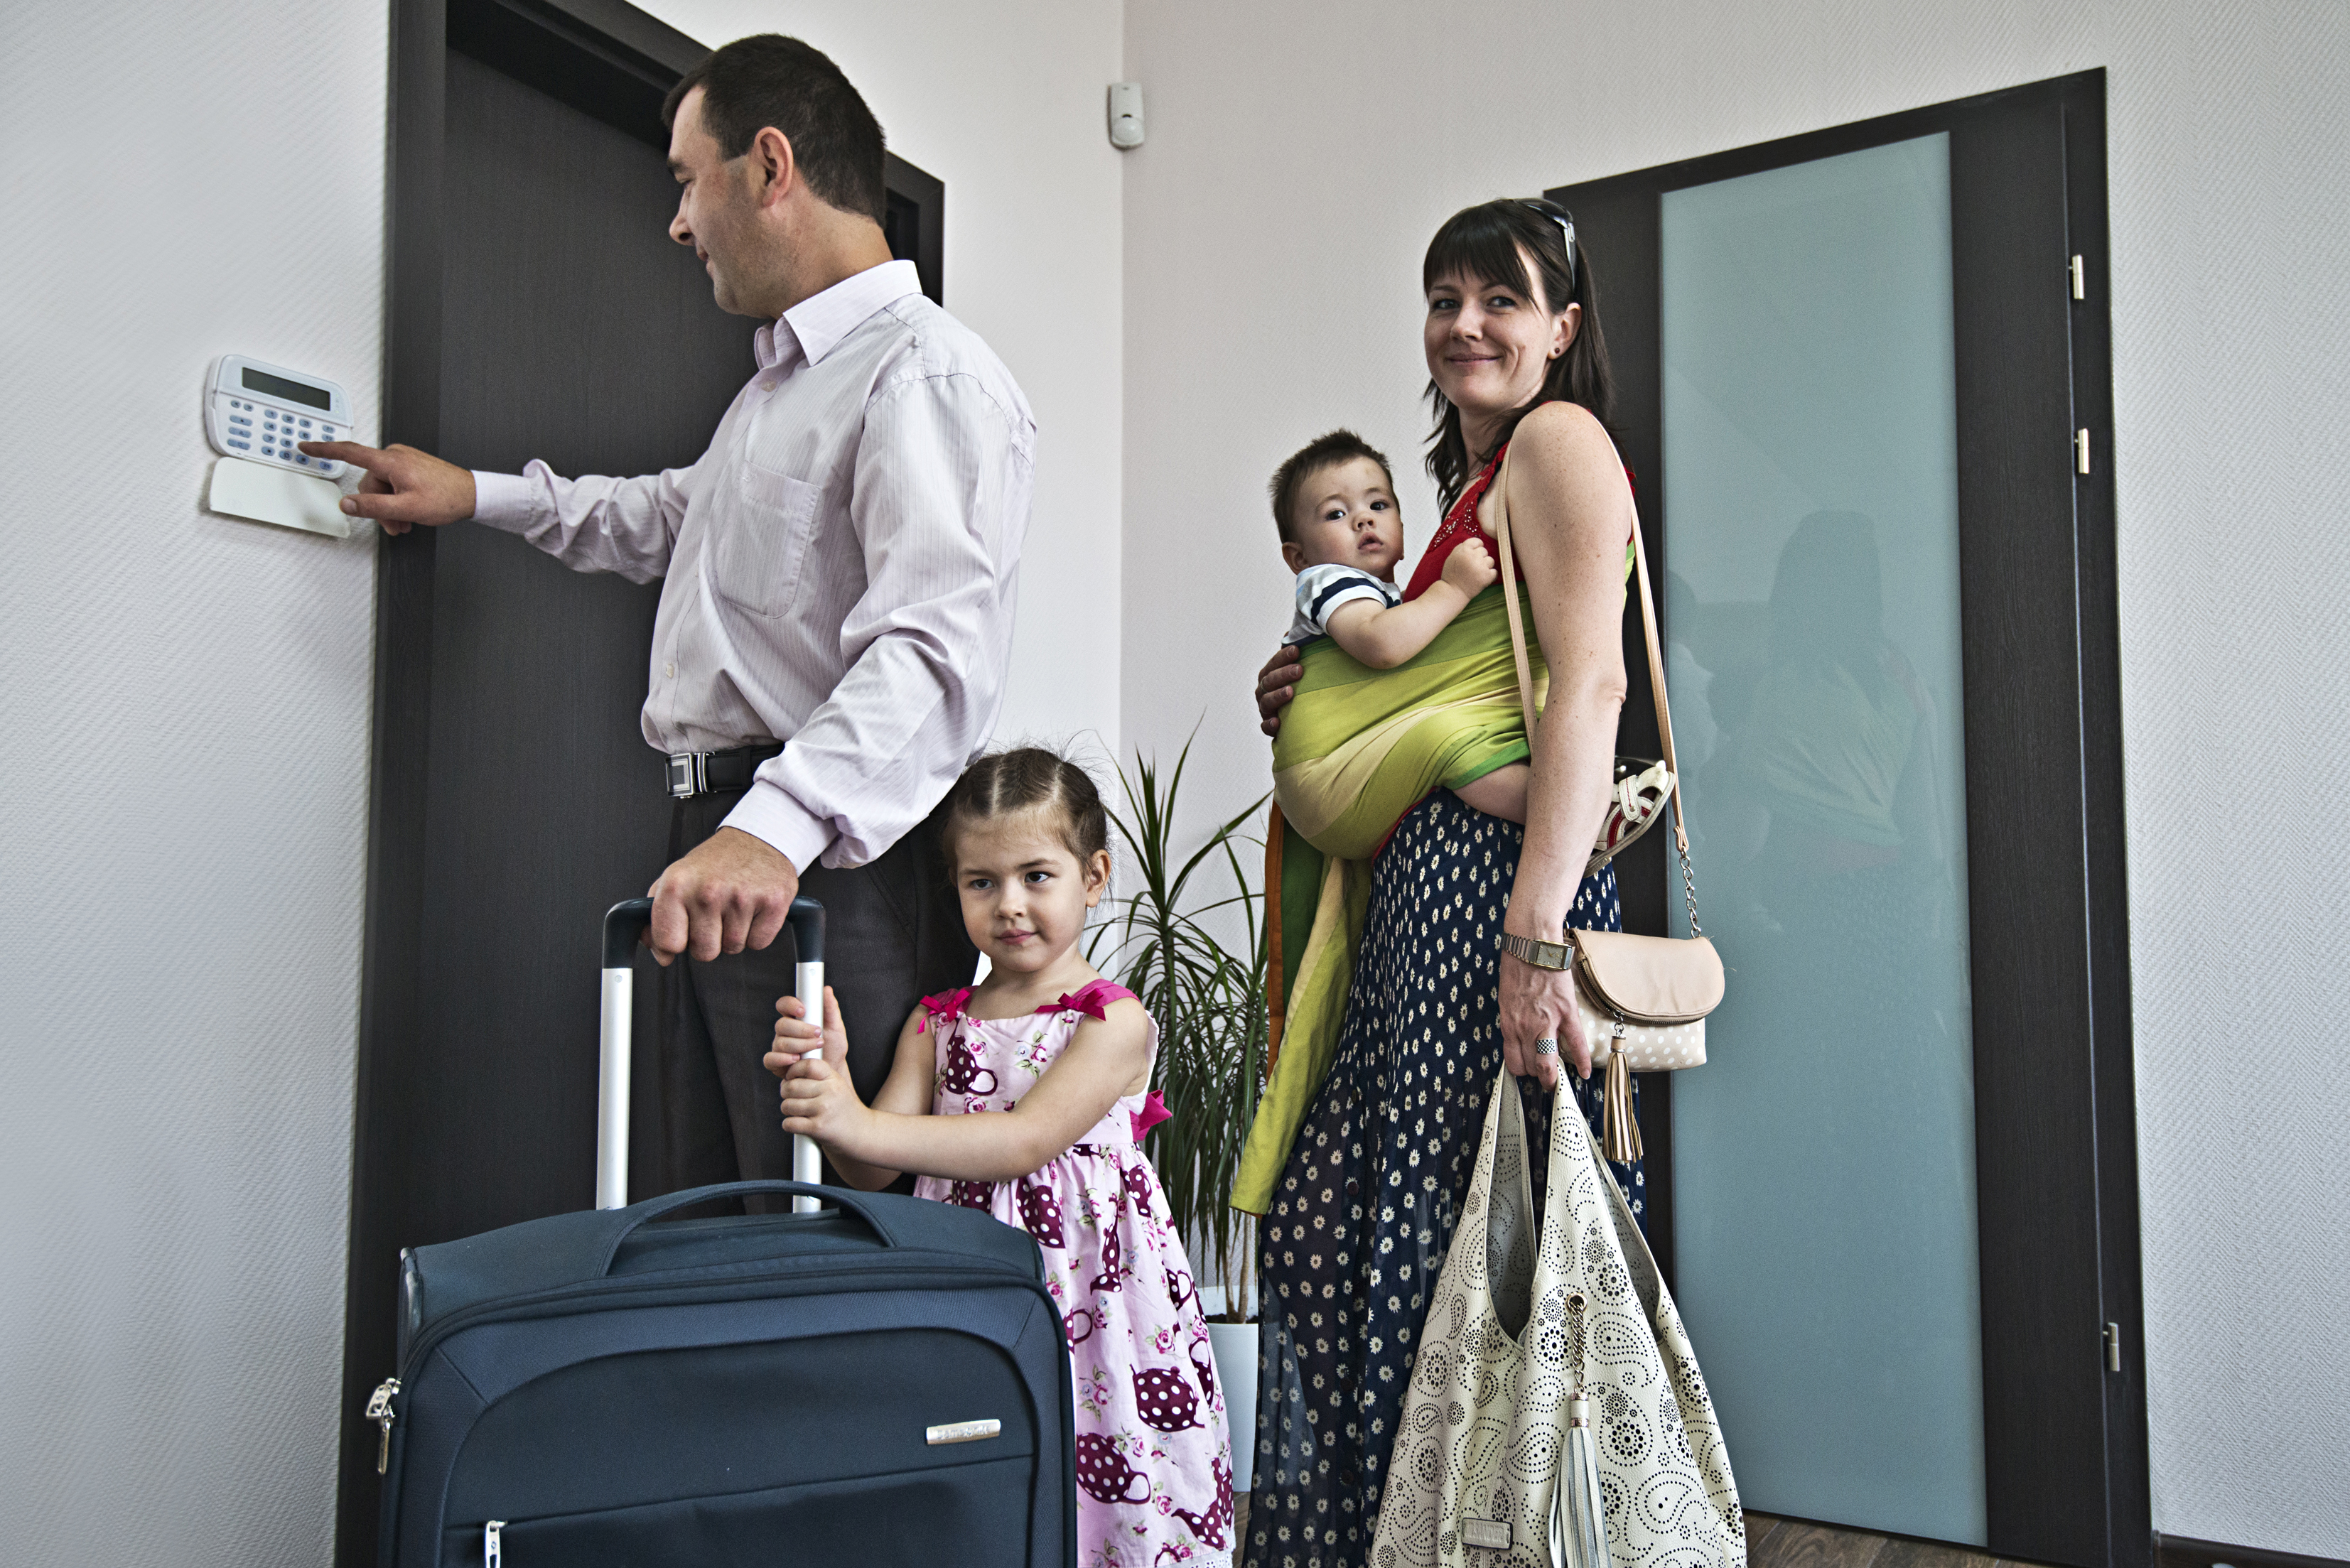 Перед отъездом мама. Охрана квартиры. Пультовая охрана квартир. Семья с чемоданами в квартире. Безопасность семьи в квартире.